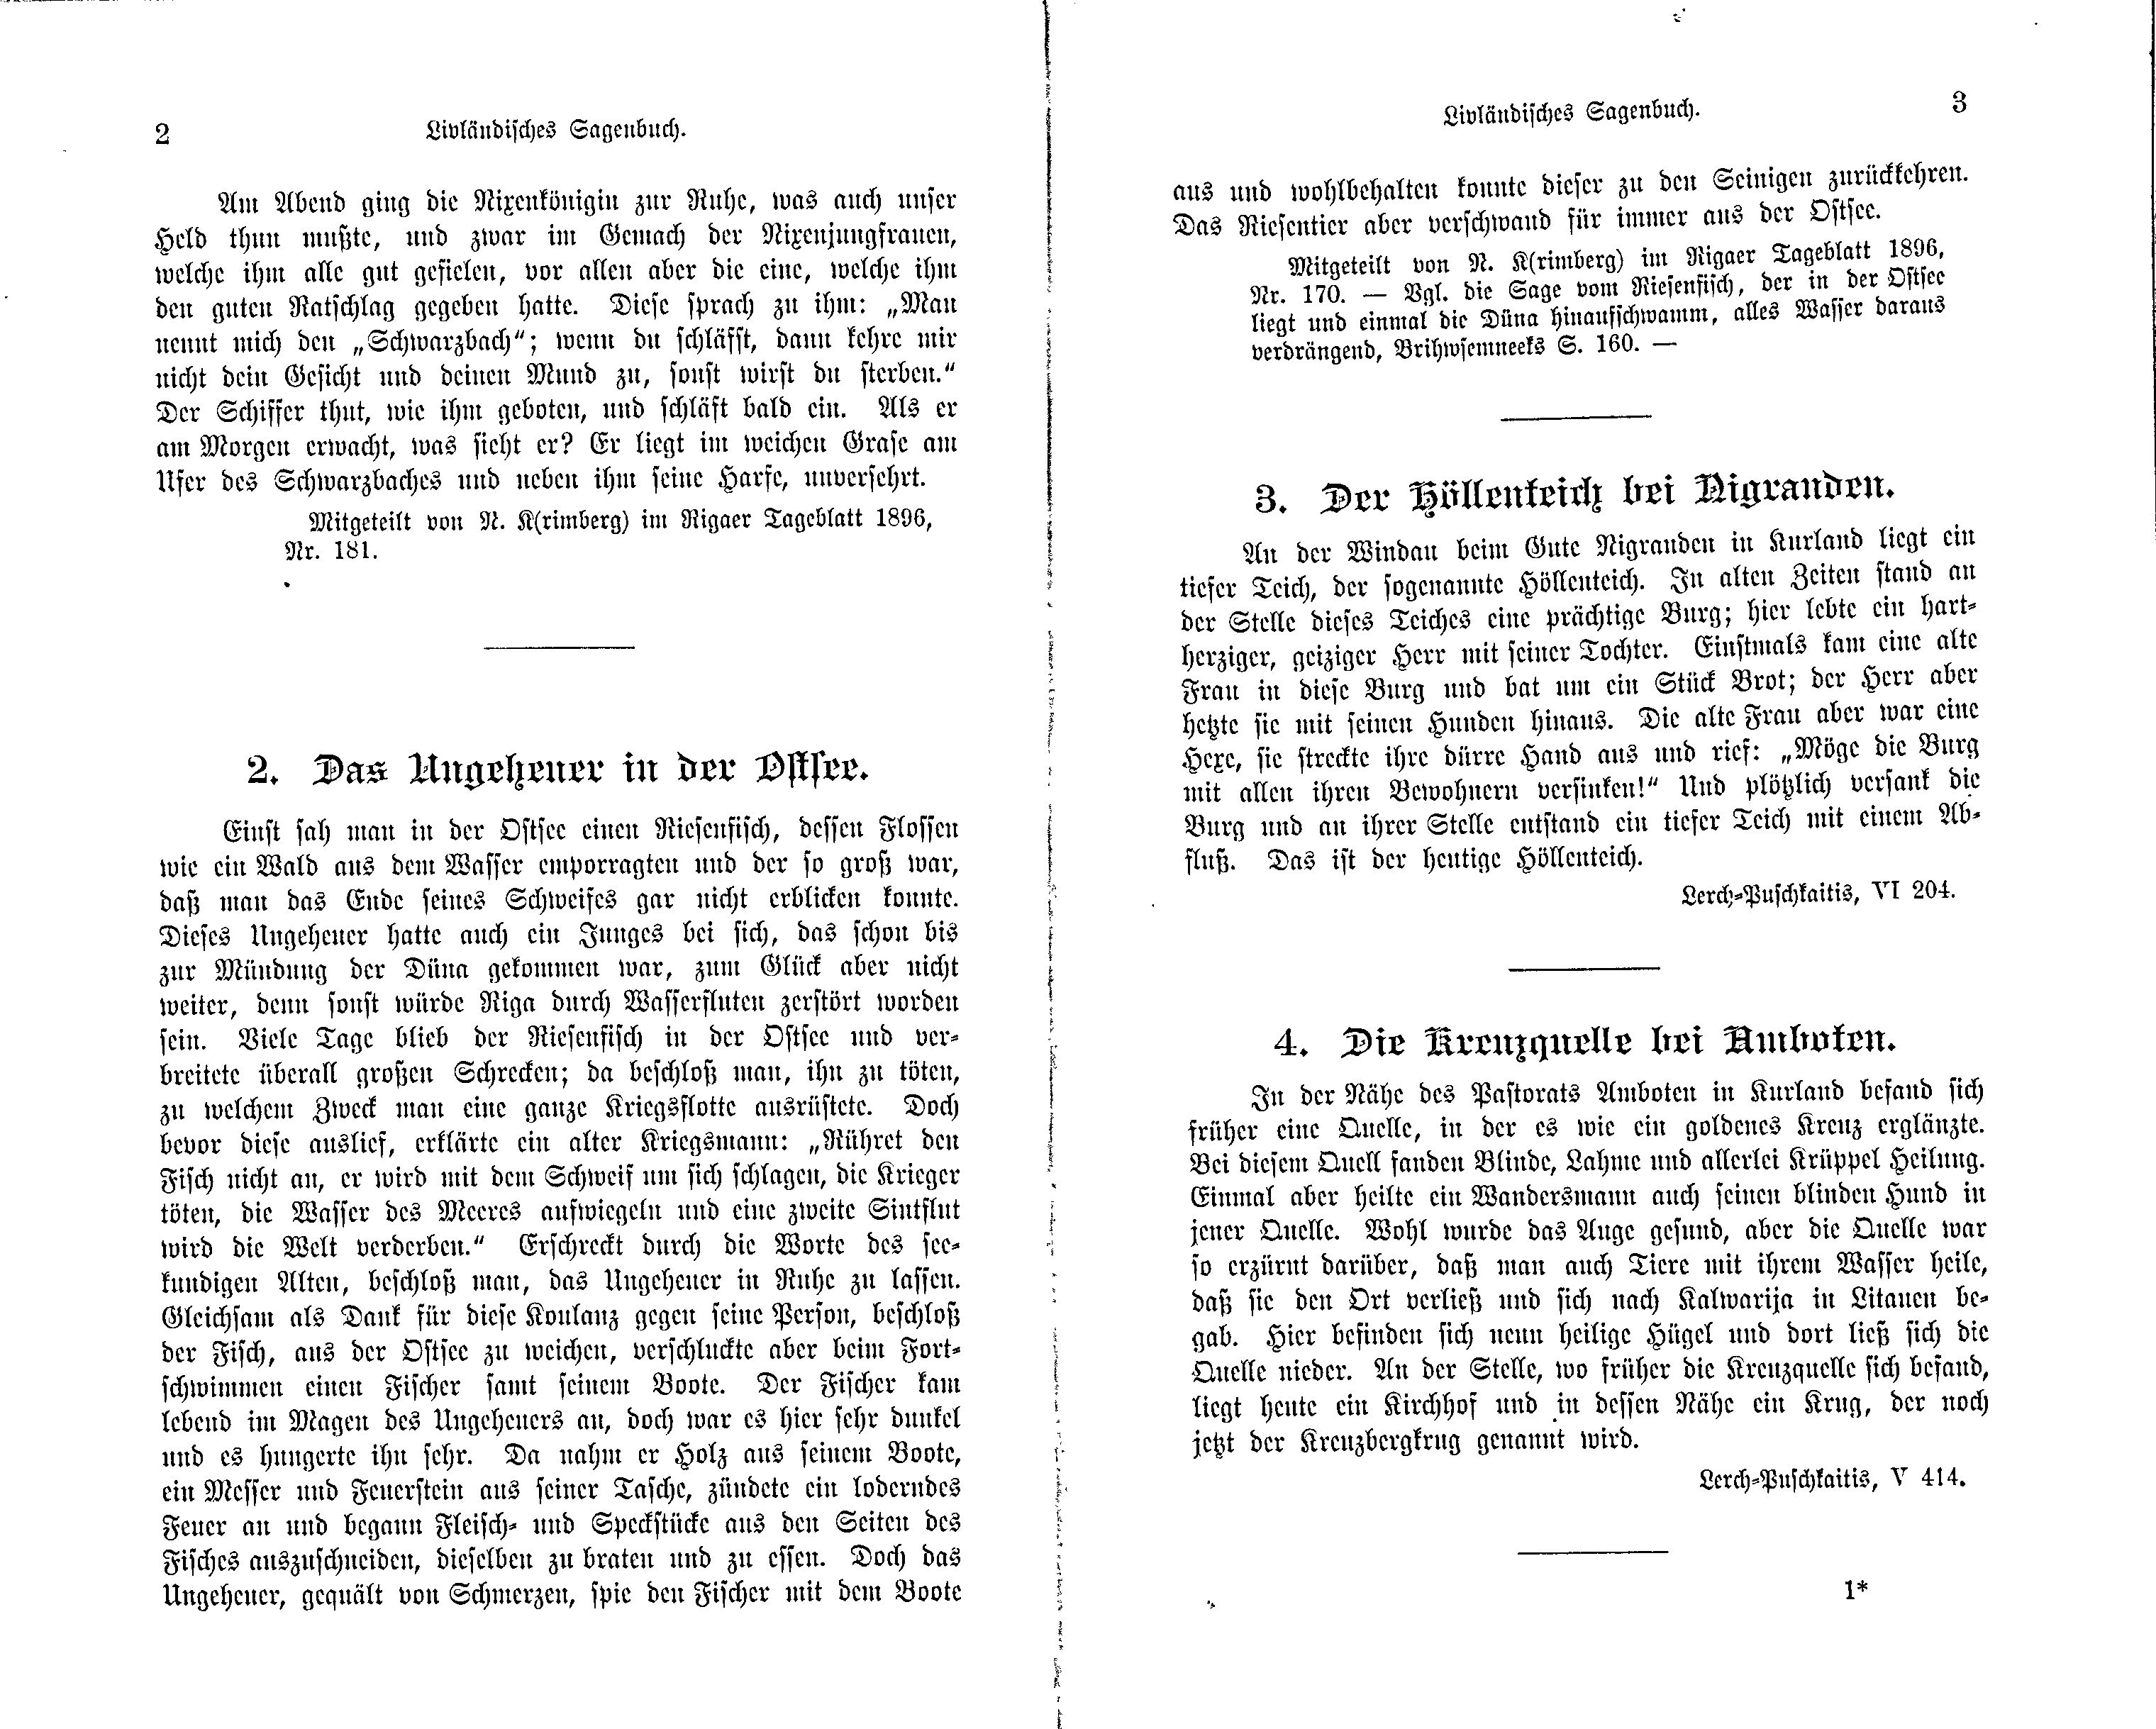 Livländisches Sagenbuch (1897) | 13. (2-3) Main body of text